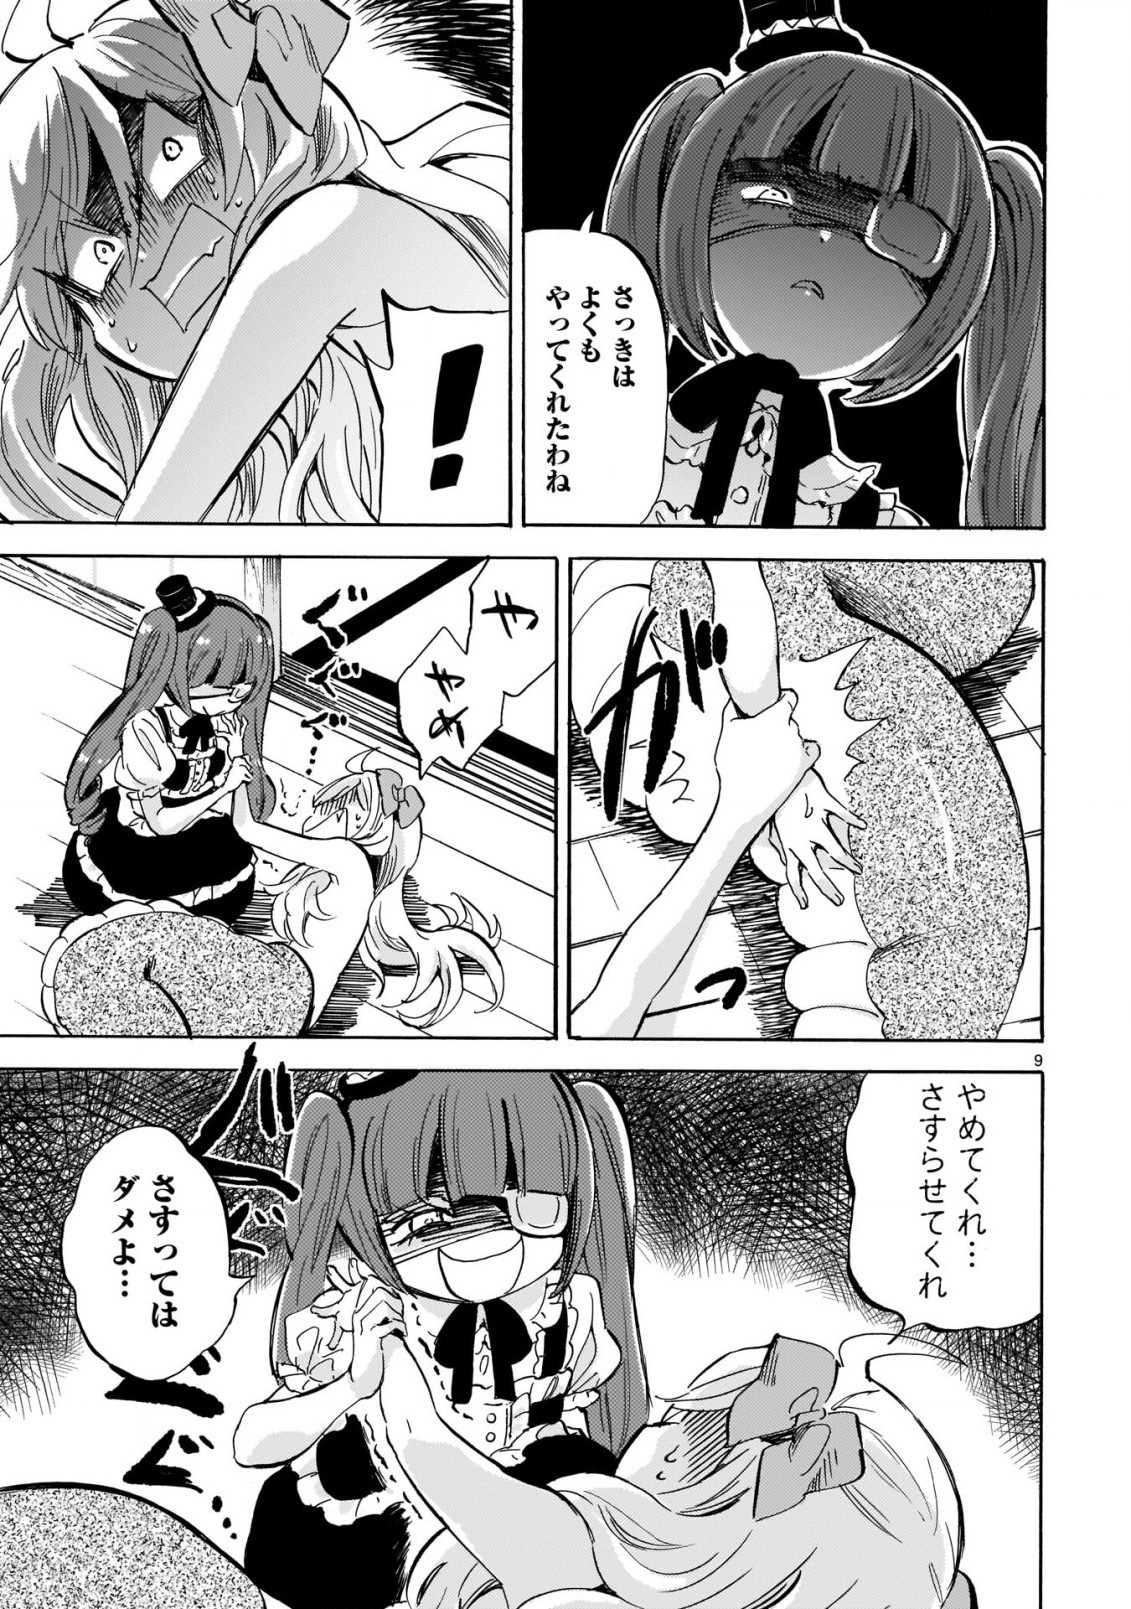 Jashin-chan Dropkick - Chapter 198 - Page 9